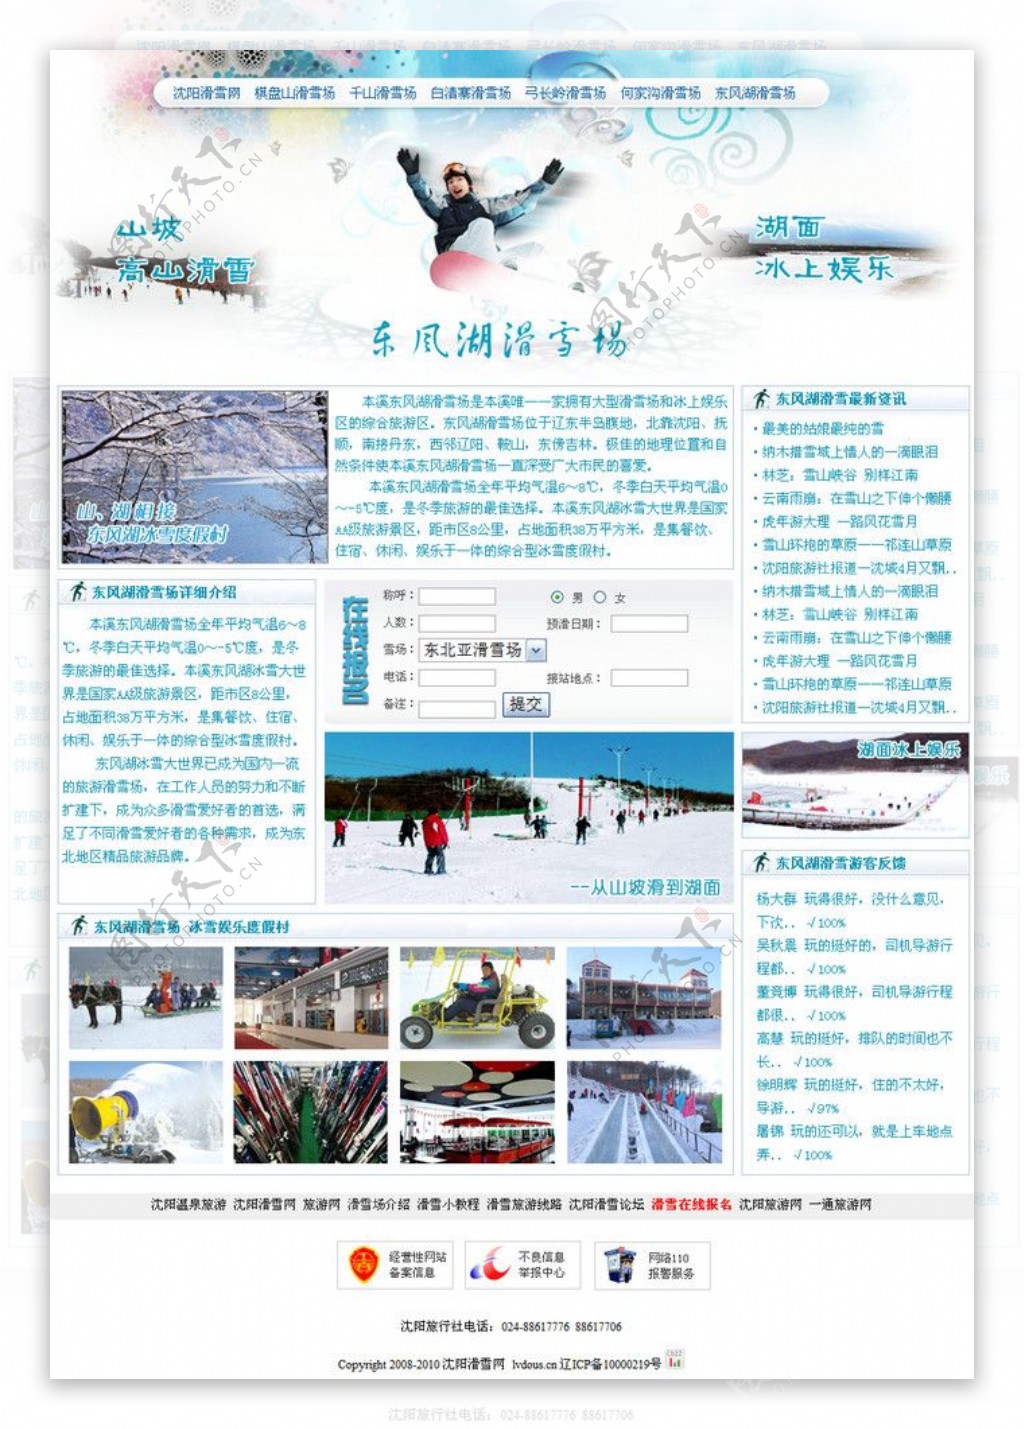 滑雪网站滑雪场内页图片